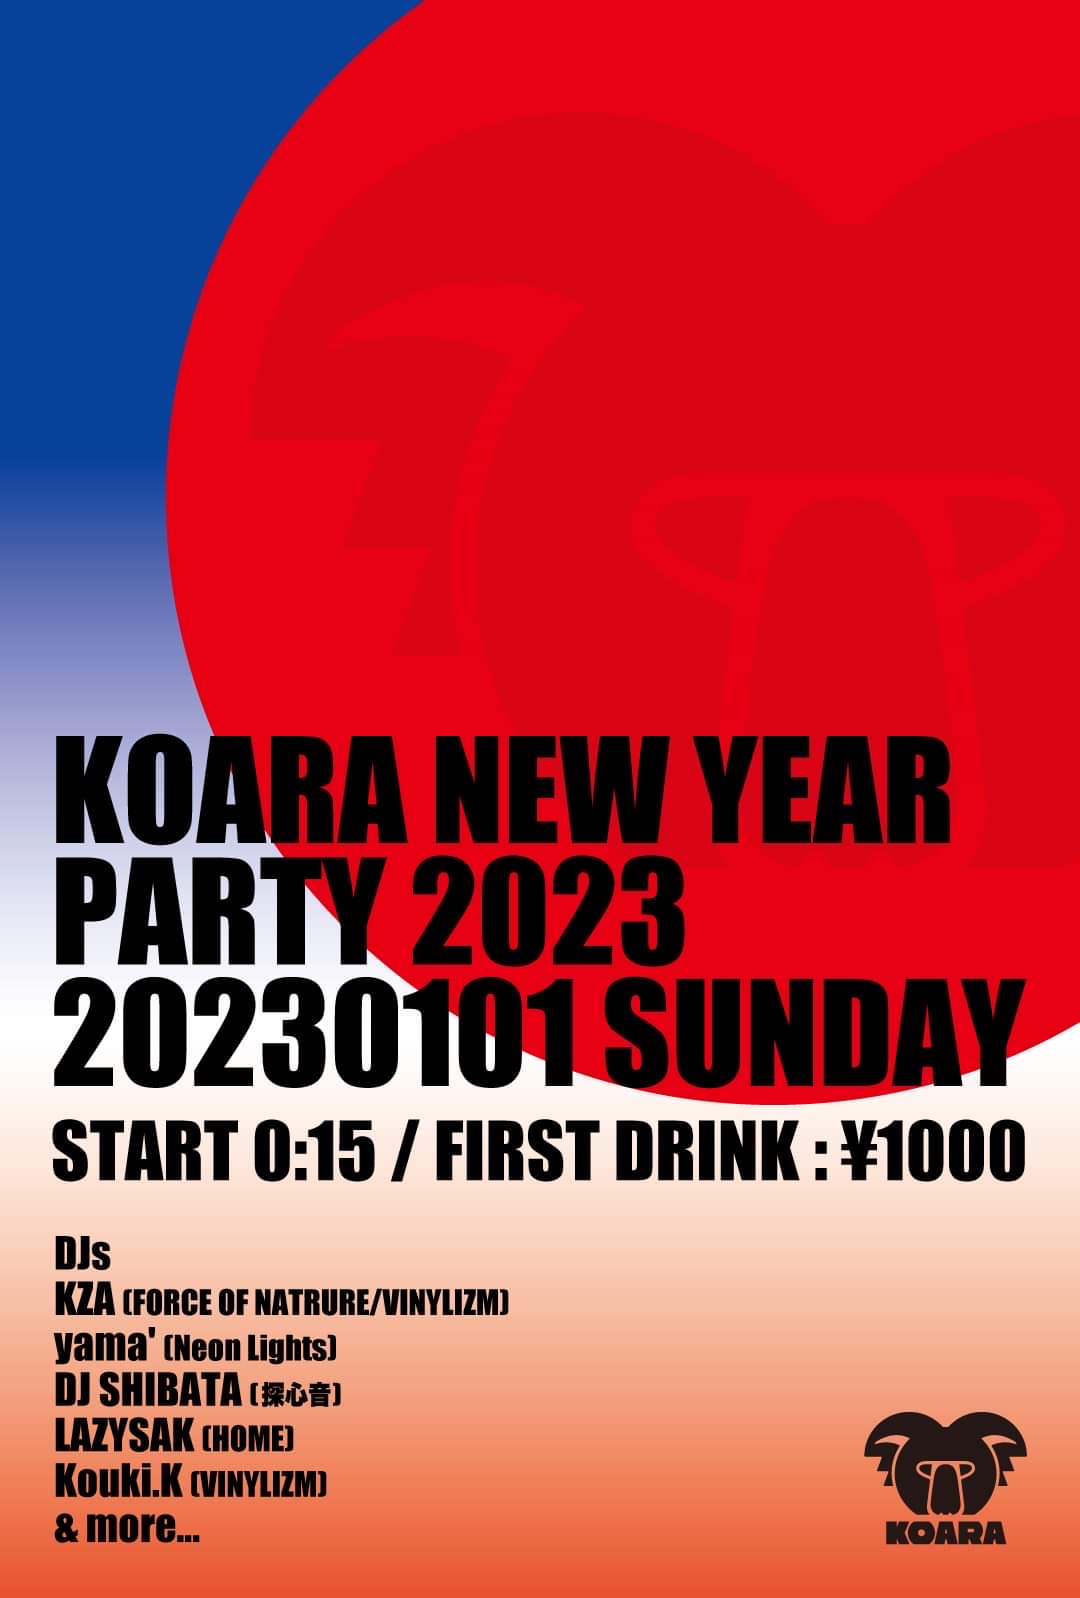 KOARA NEW YEAR PARTY 2023 